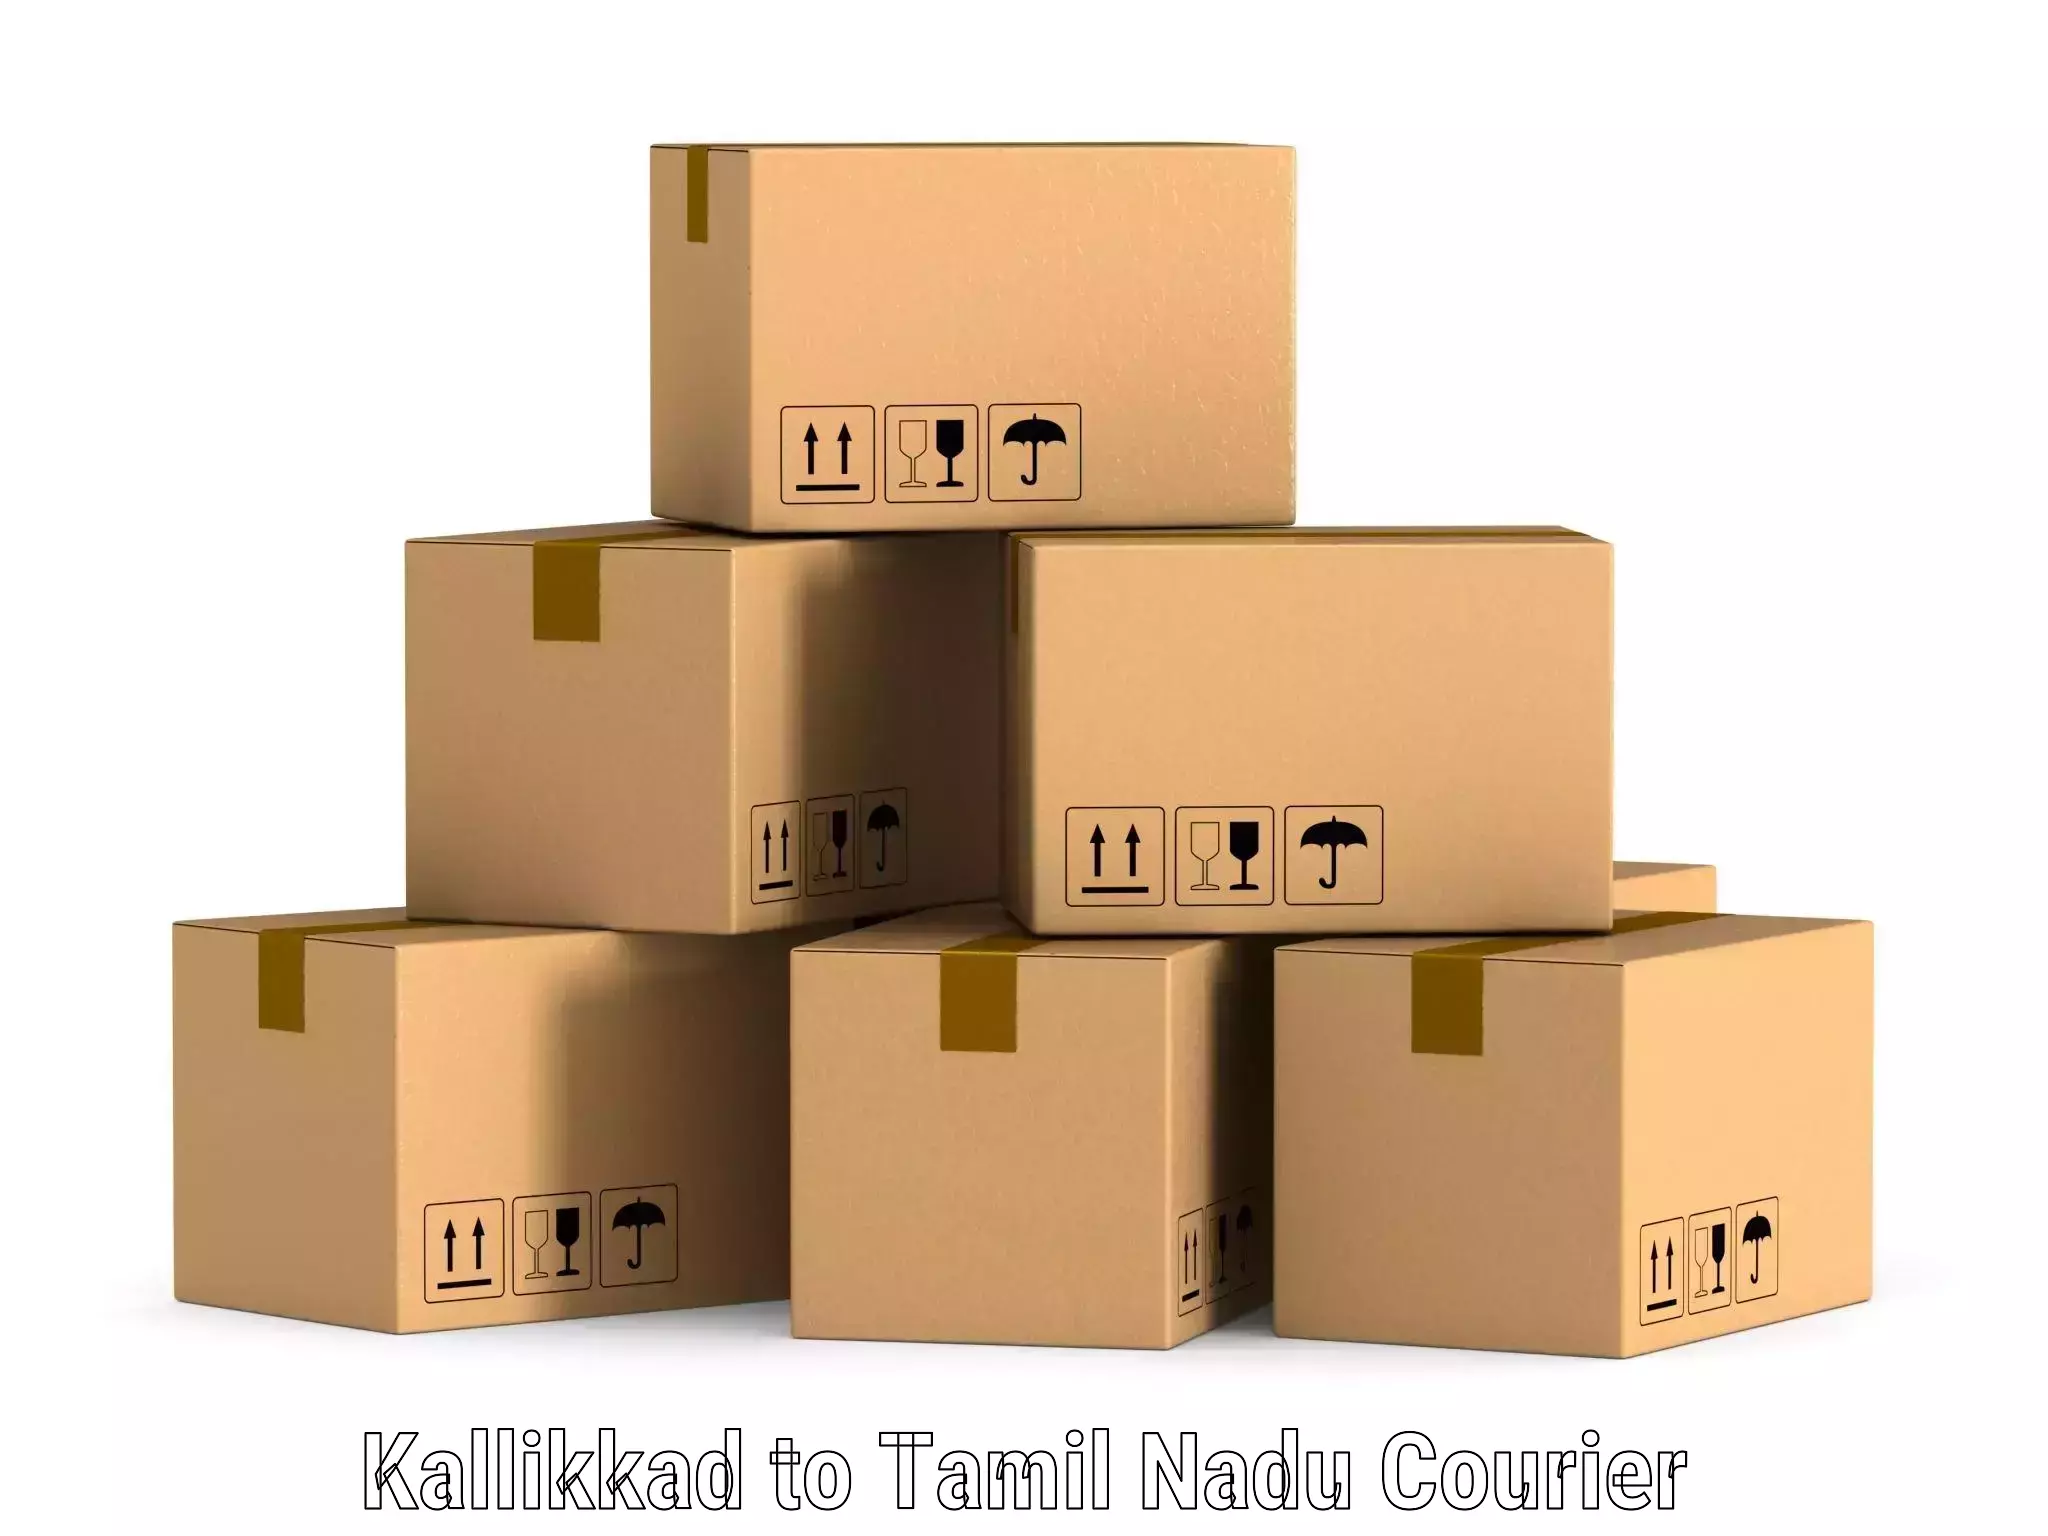 Corporate courier solutions Kallikkad to Kunnathur